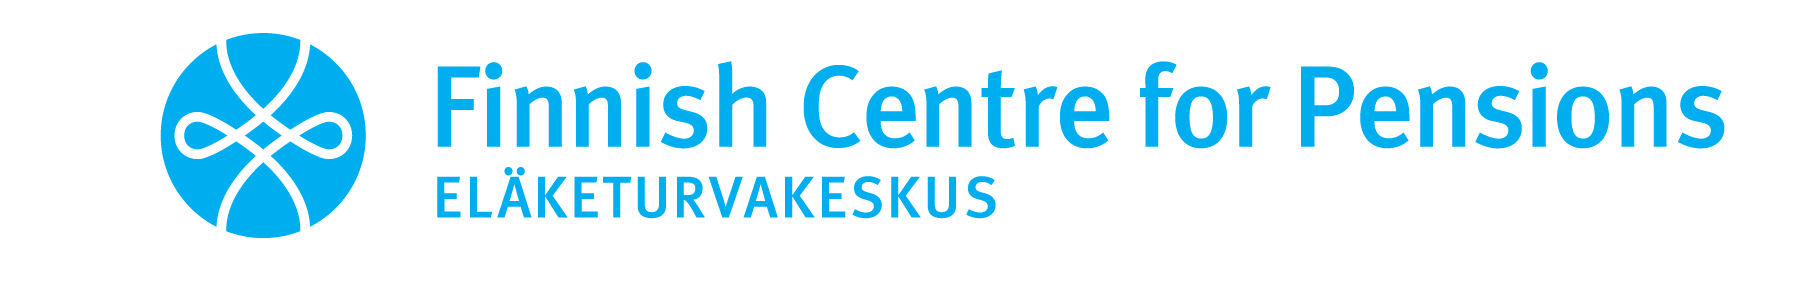 ETK-logo-eng